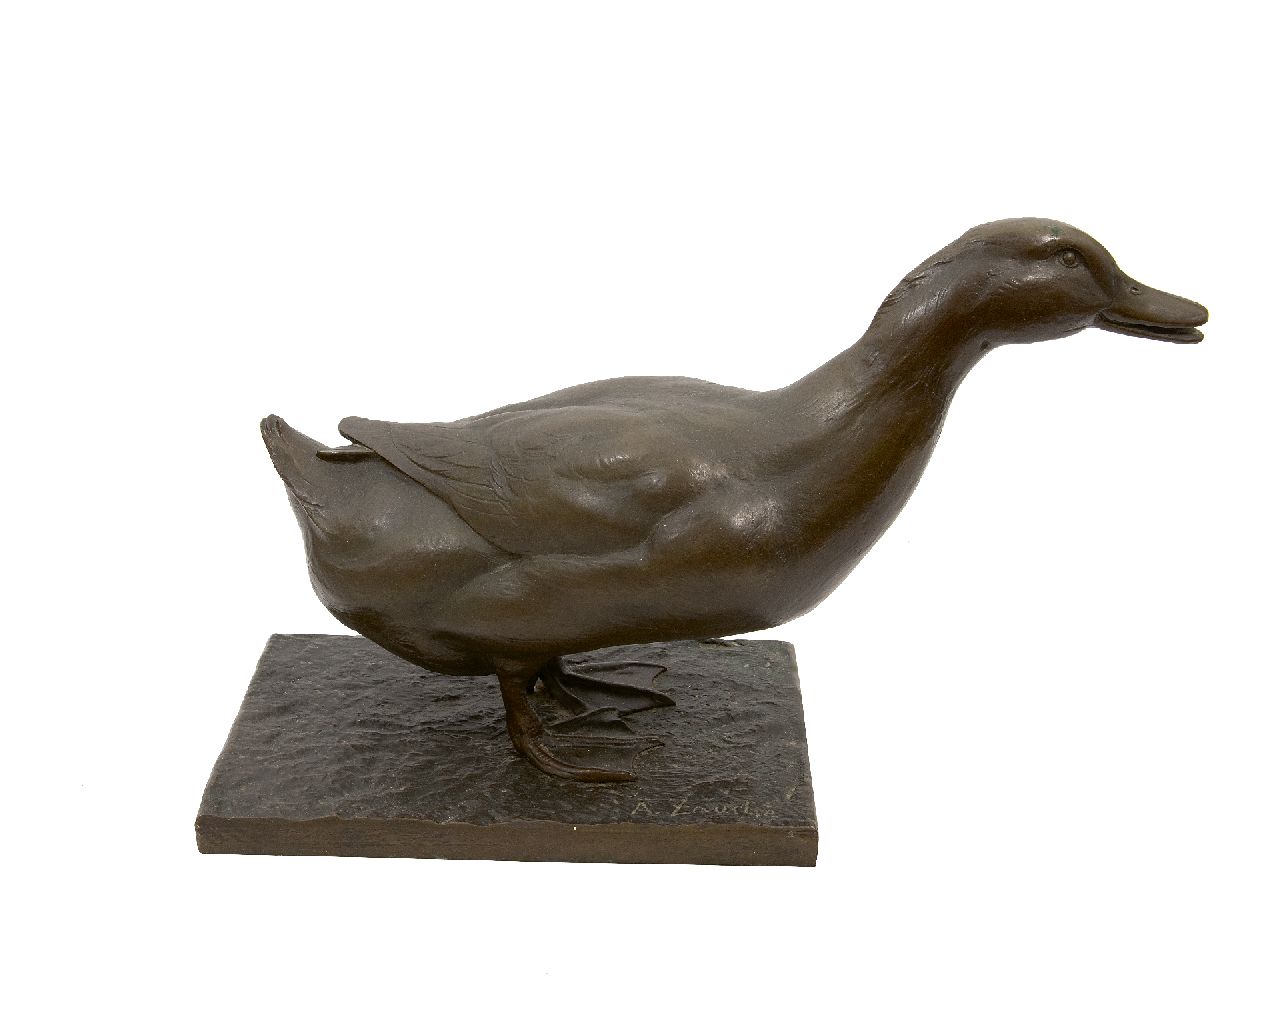 Arno 'Oswald' Zauche | Eend, brons, 39,0 x 59,0 cm, gesigneerd op basis